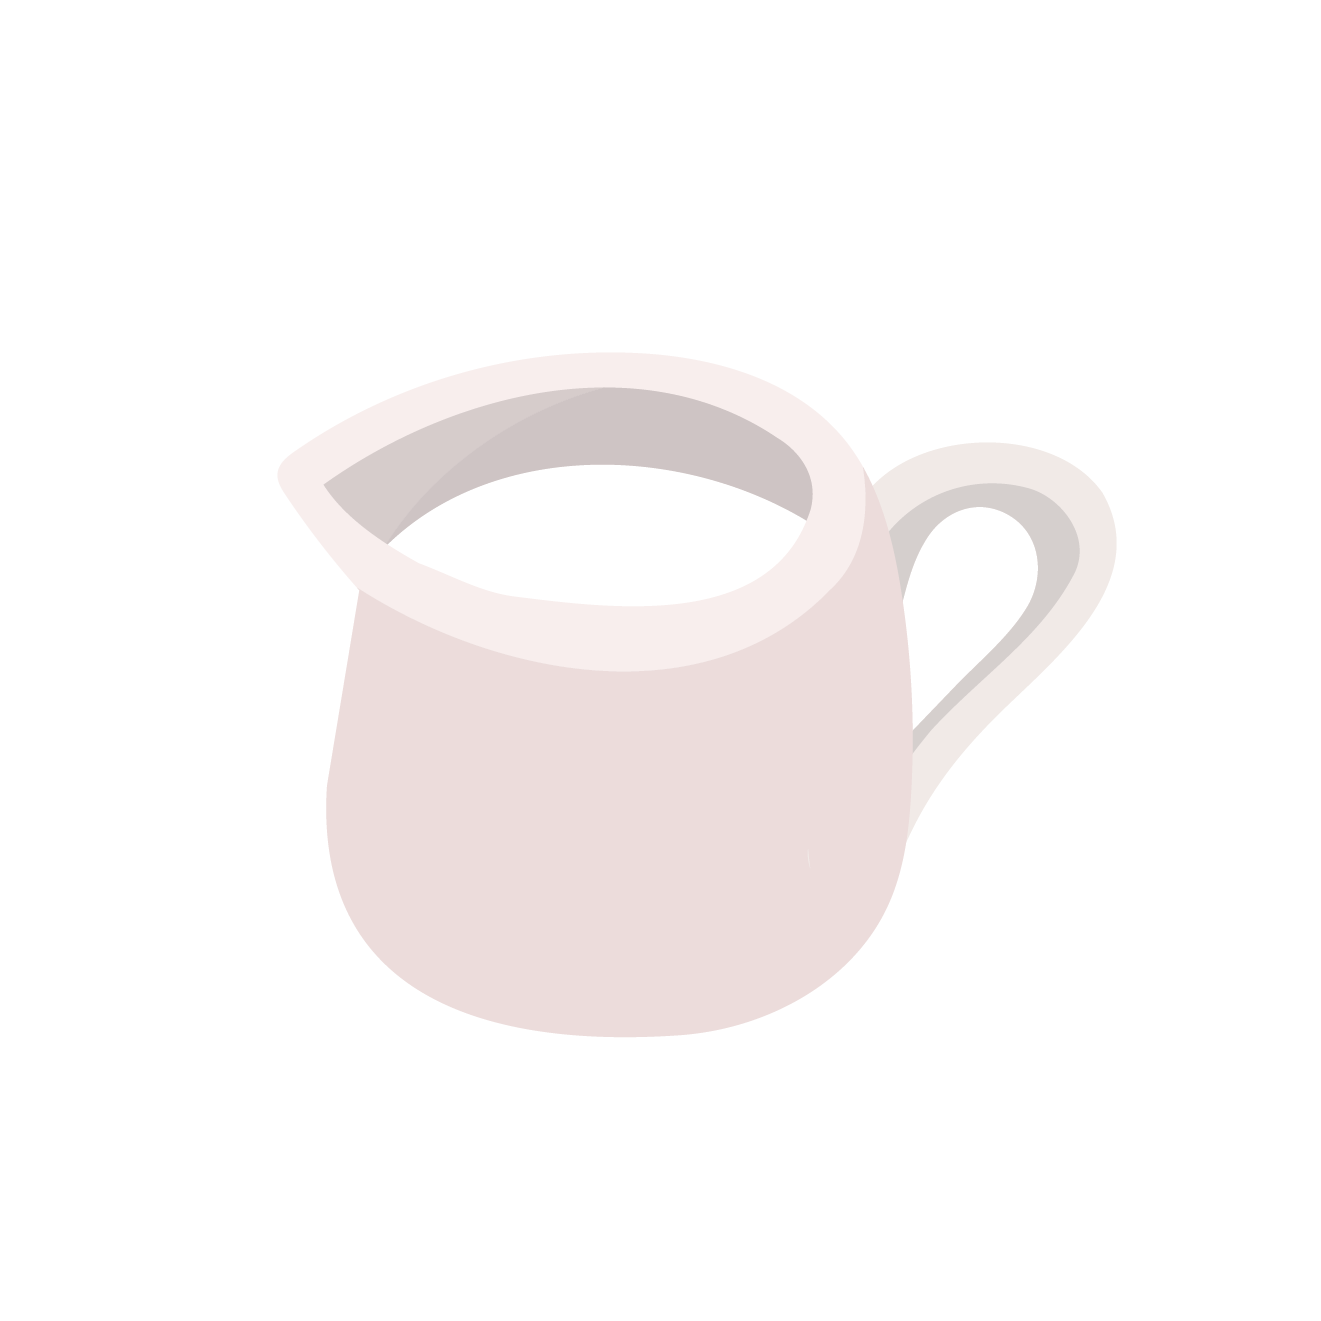 ミルクピッチャーのイラスト コーヒーや紅茶に 商用フリー 無料 のイラスト素材なら イラストマンション